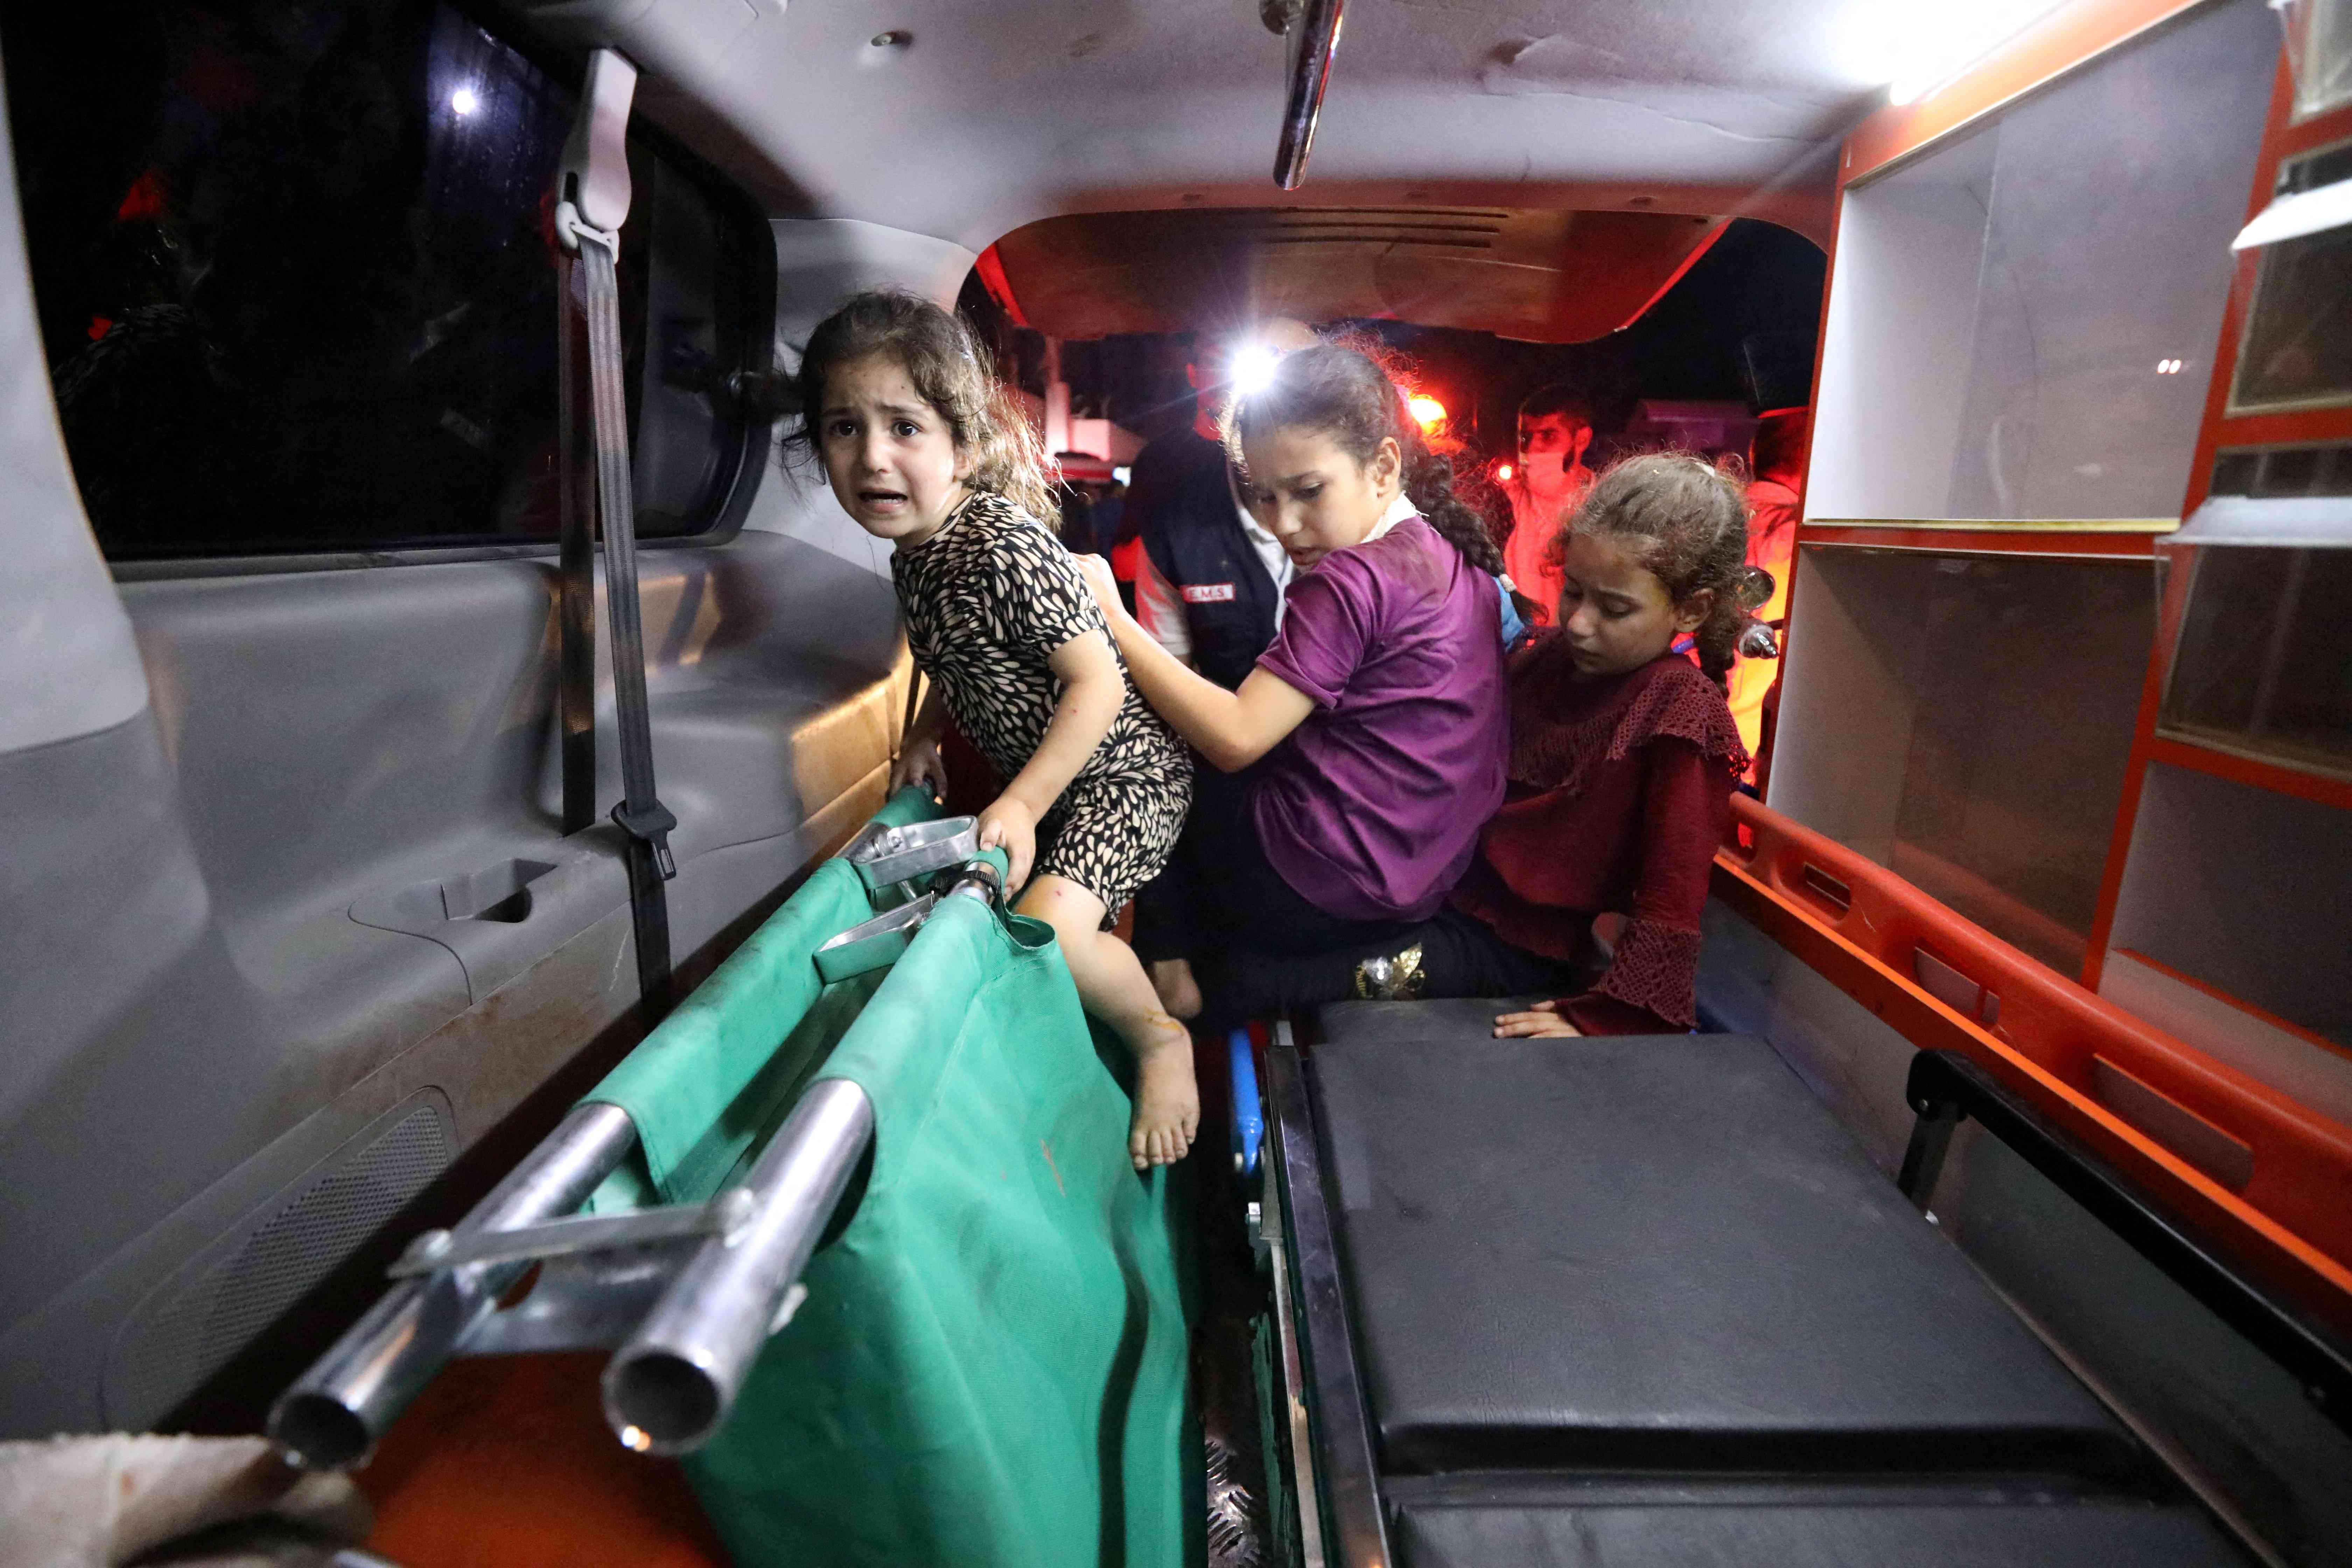 صحة غزة: يصعب التعرف على جثث ضحايا مجزرة المعمداني